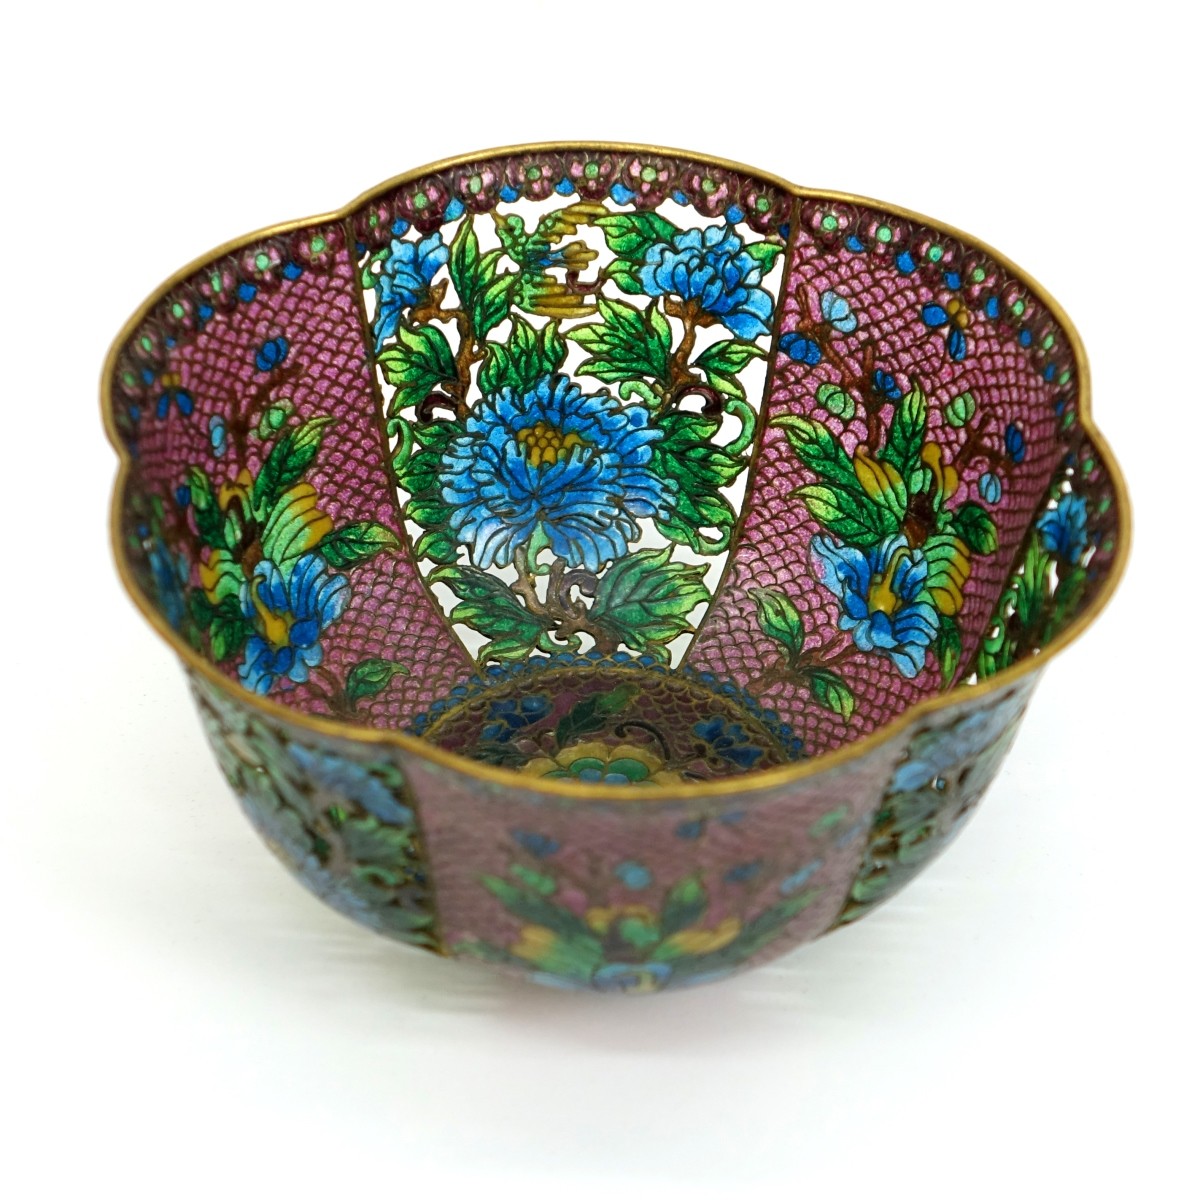 Antique Chinese Plique a Jour Bowl